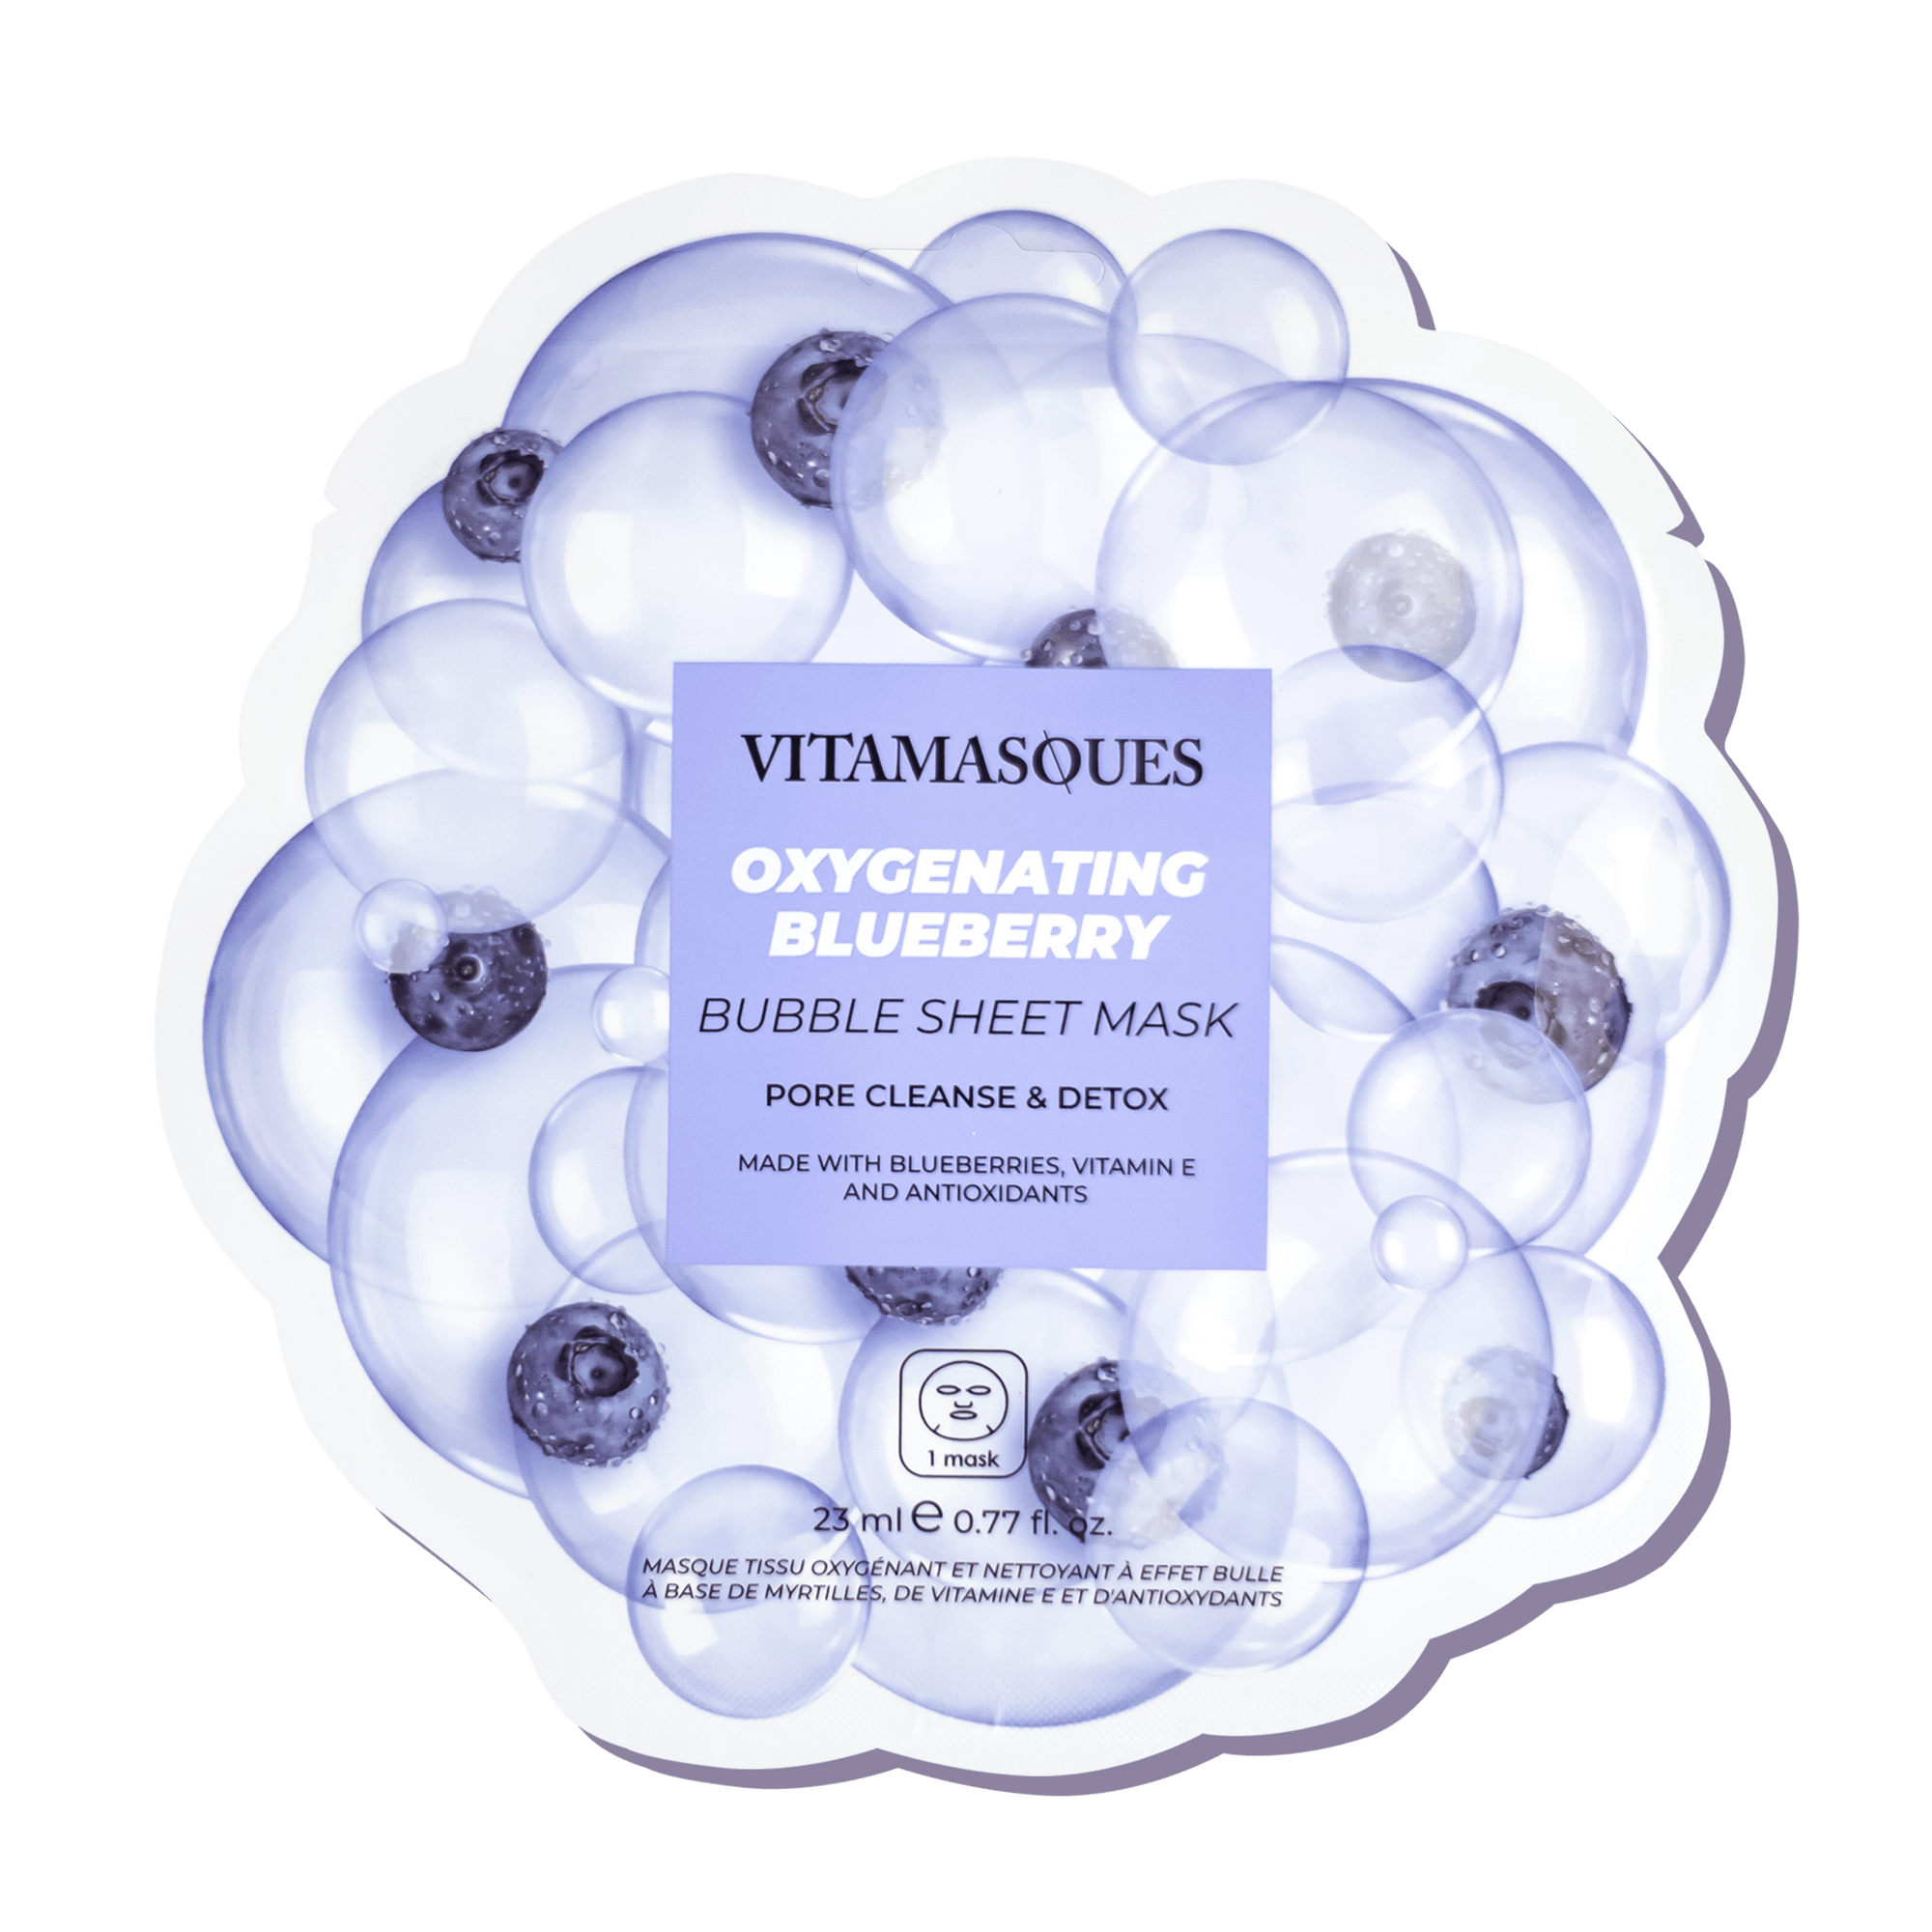 Oxygenating Blueberry Bubble Sheet Mask - Vitamasques